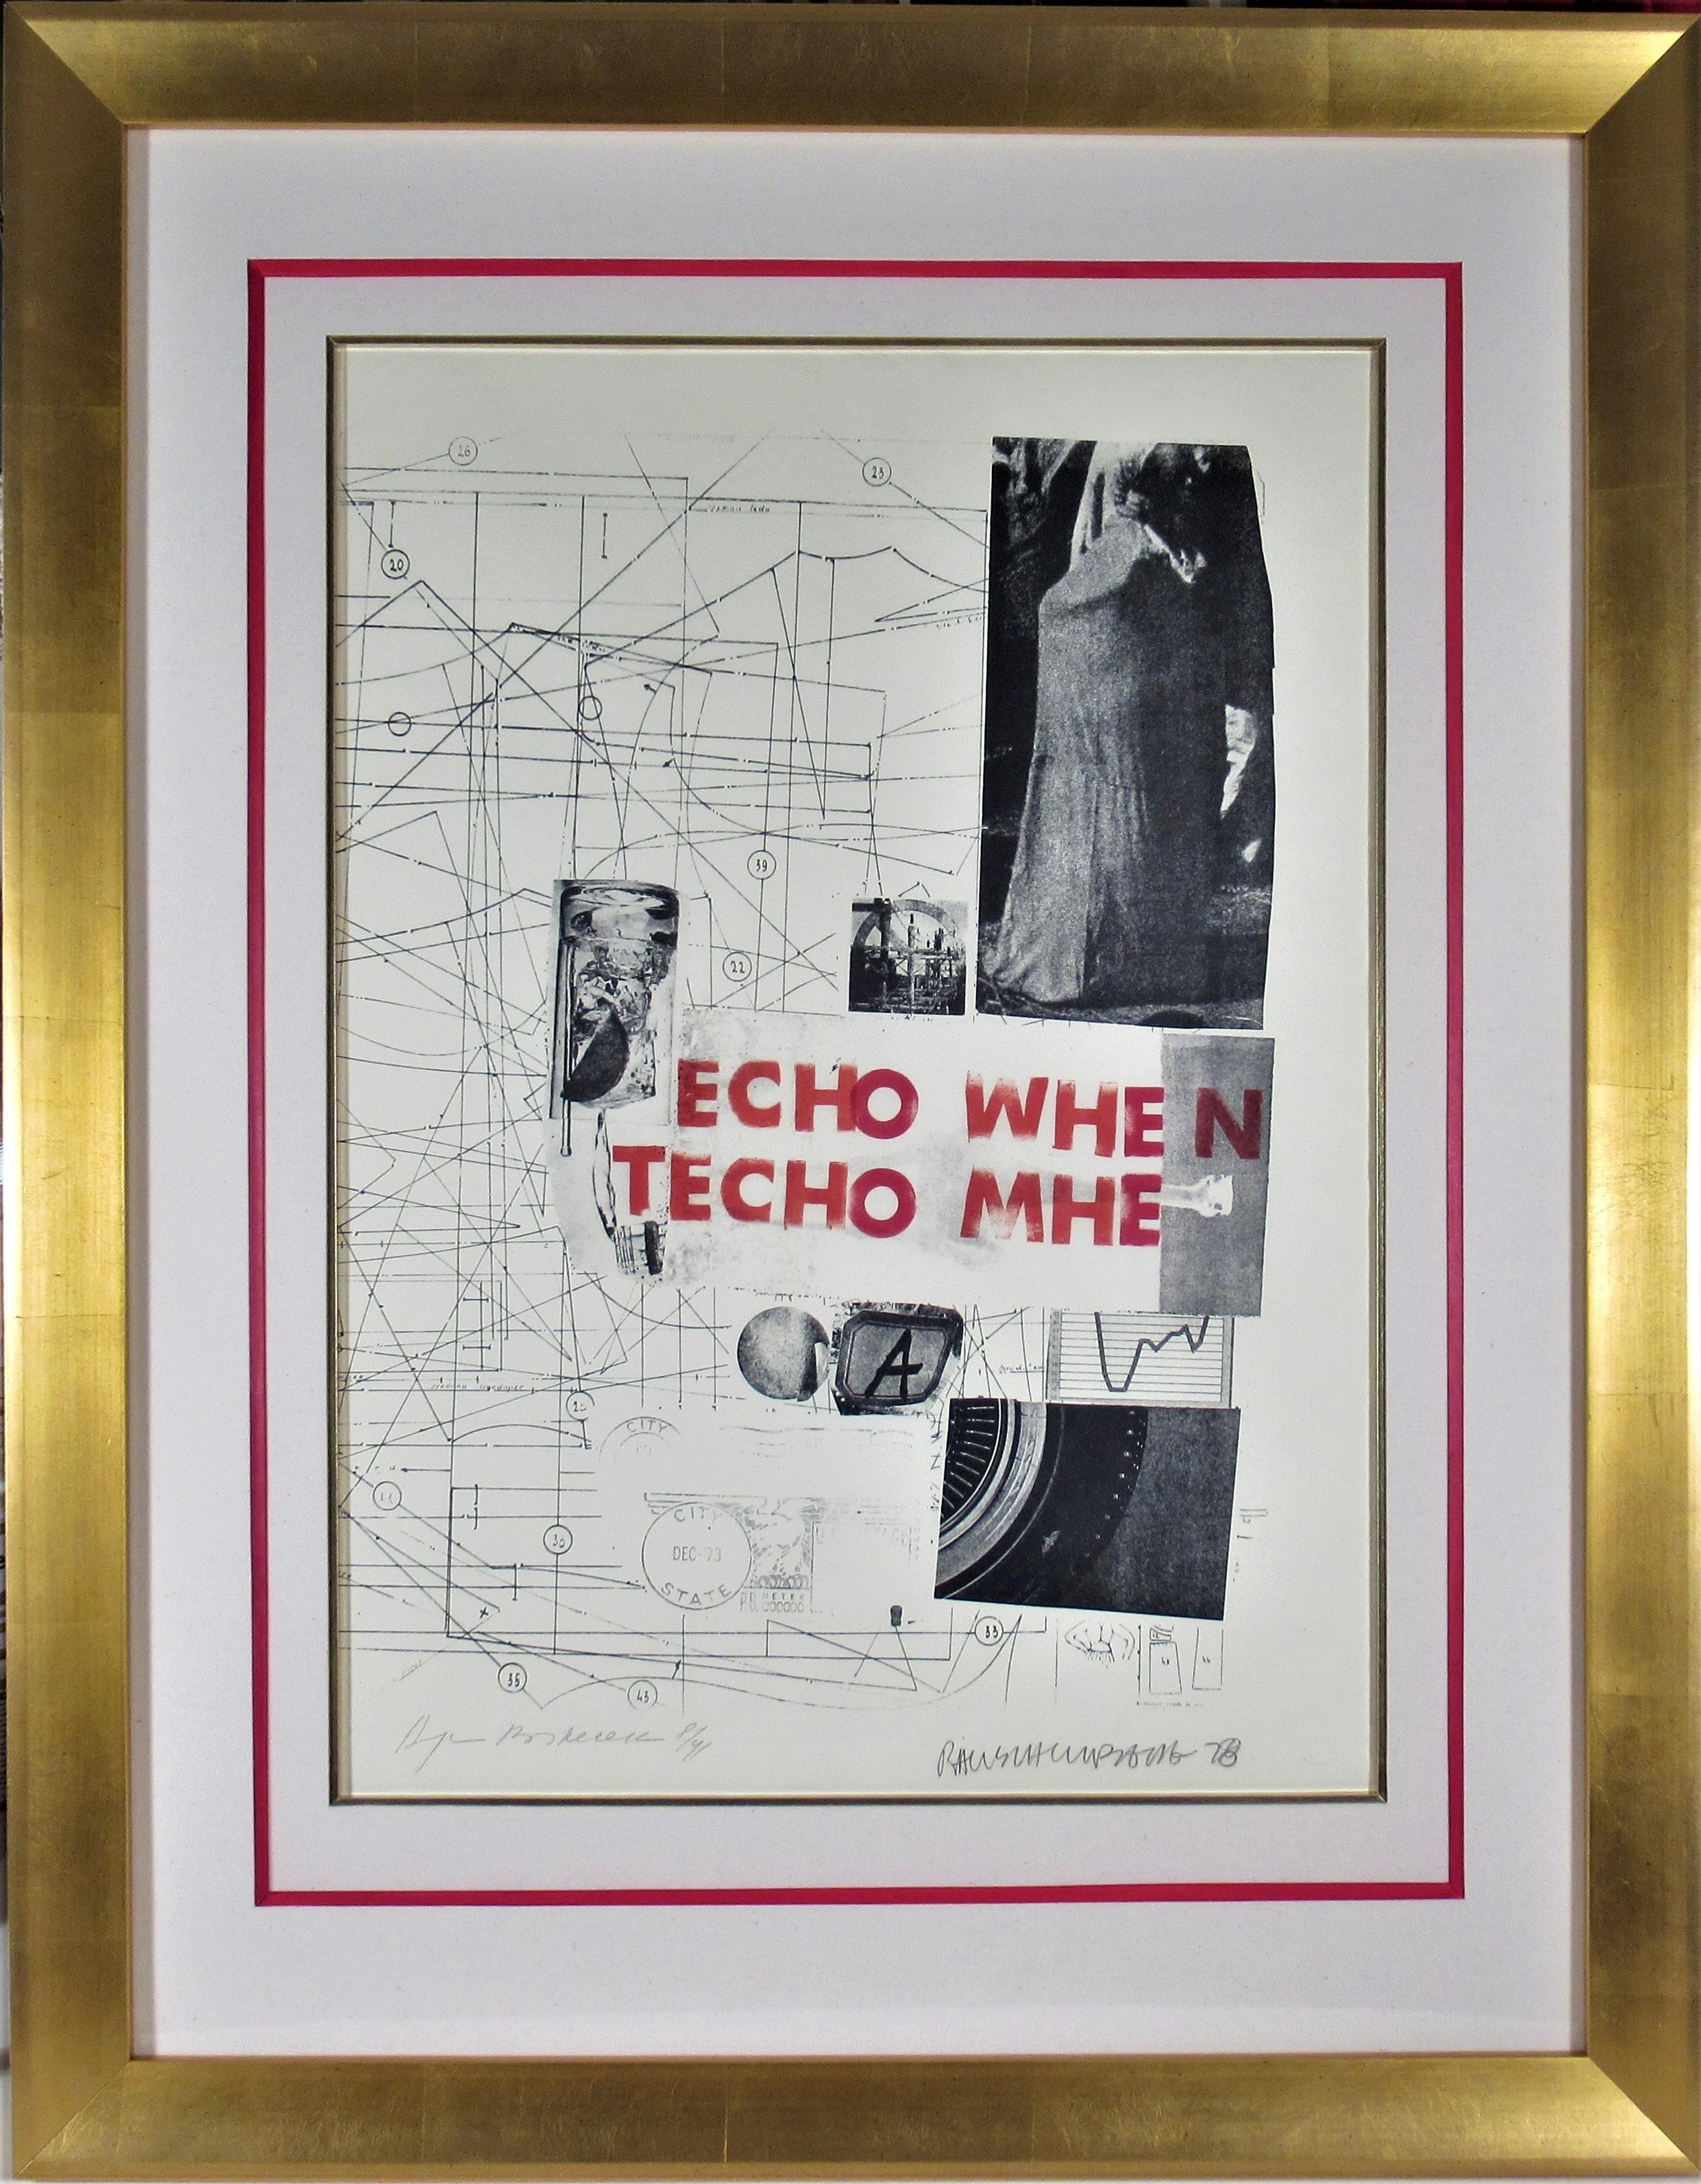 Robert Rauschenberg Abstract Print - Echo When